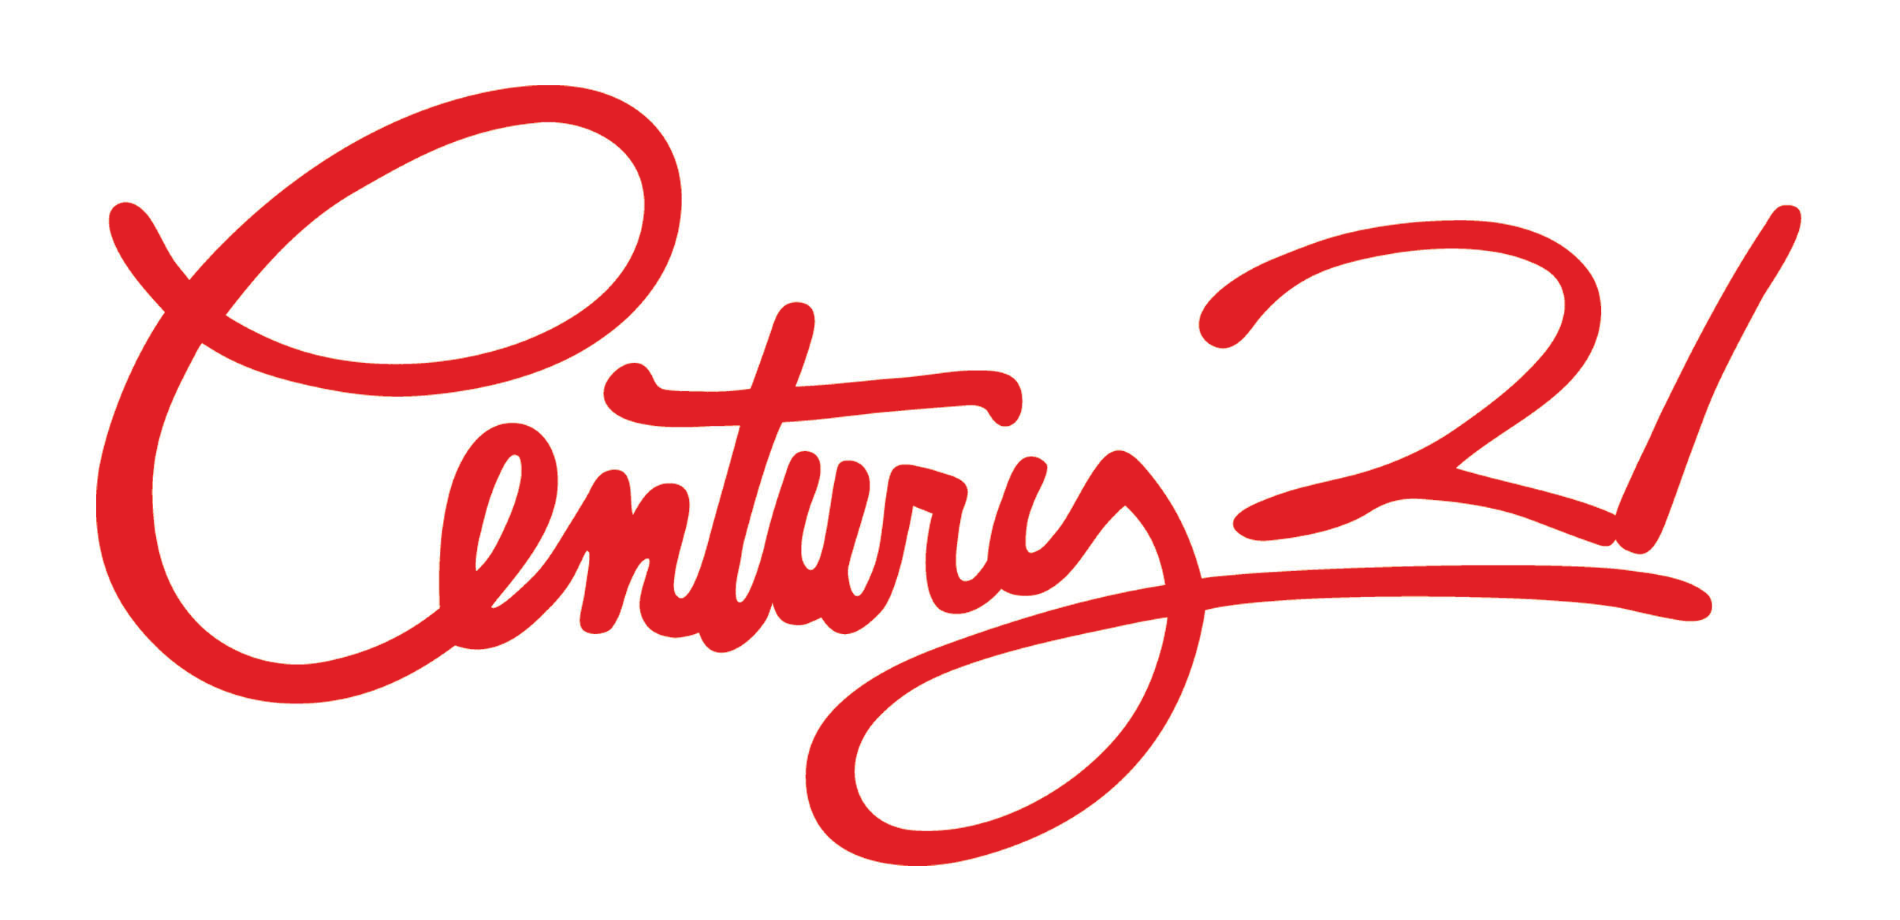 Century 21 – Logos Download
 Century 21 Logo